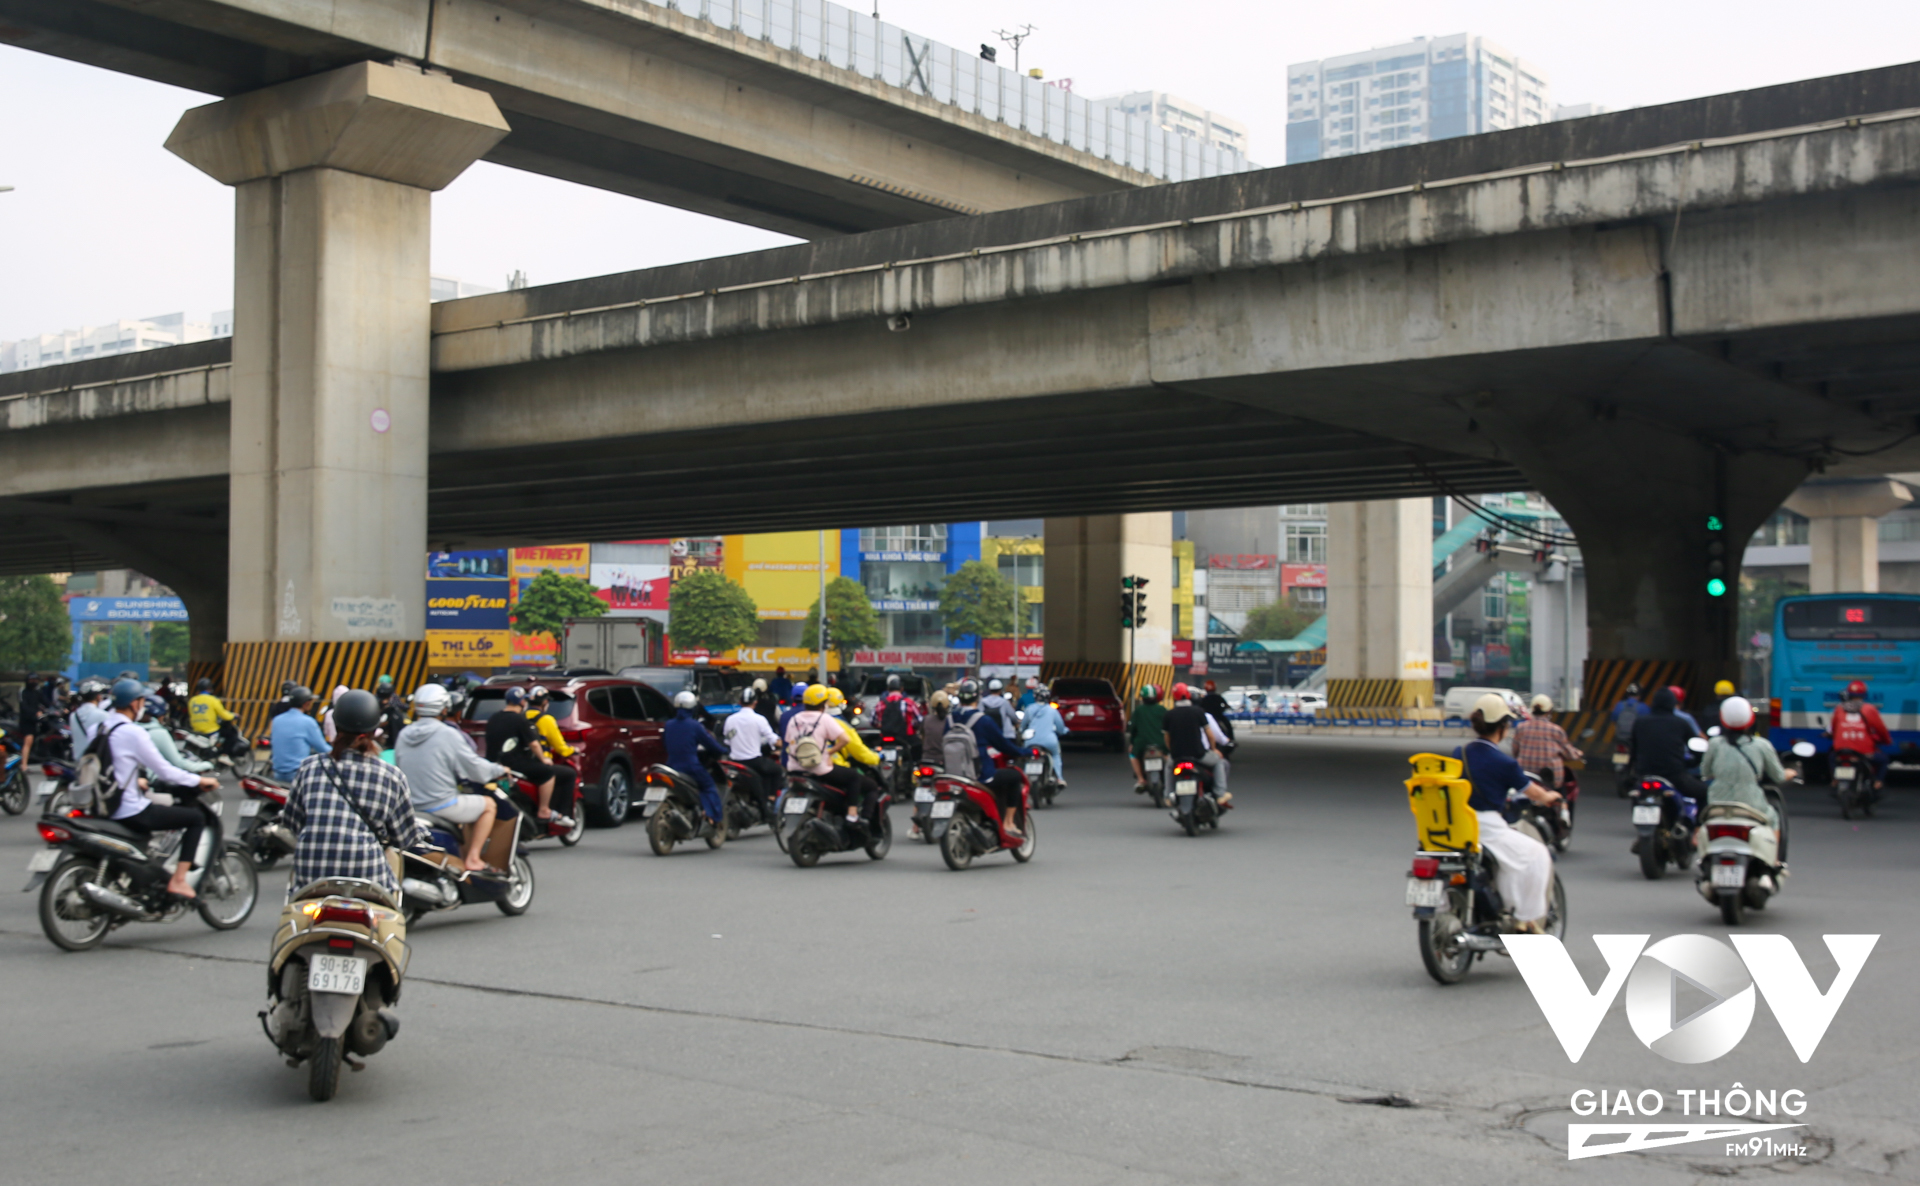 Lượng phương tiện rẽ phải đi Nguyễn Xiển cũng vì thế mà gặp đôi chút khó khăn do các phương tiện dừng xếp hàng chờ đèn tín hiệu, song đến 7h30 tình trạng này đã giảm bớt